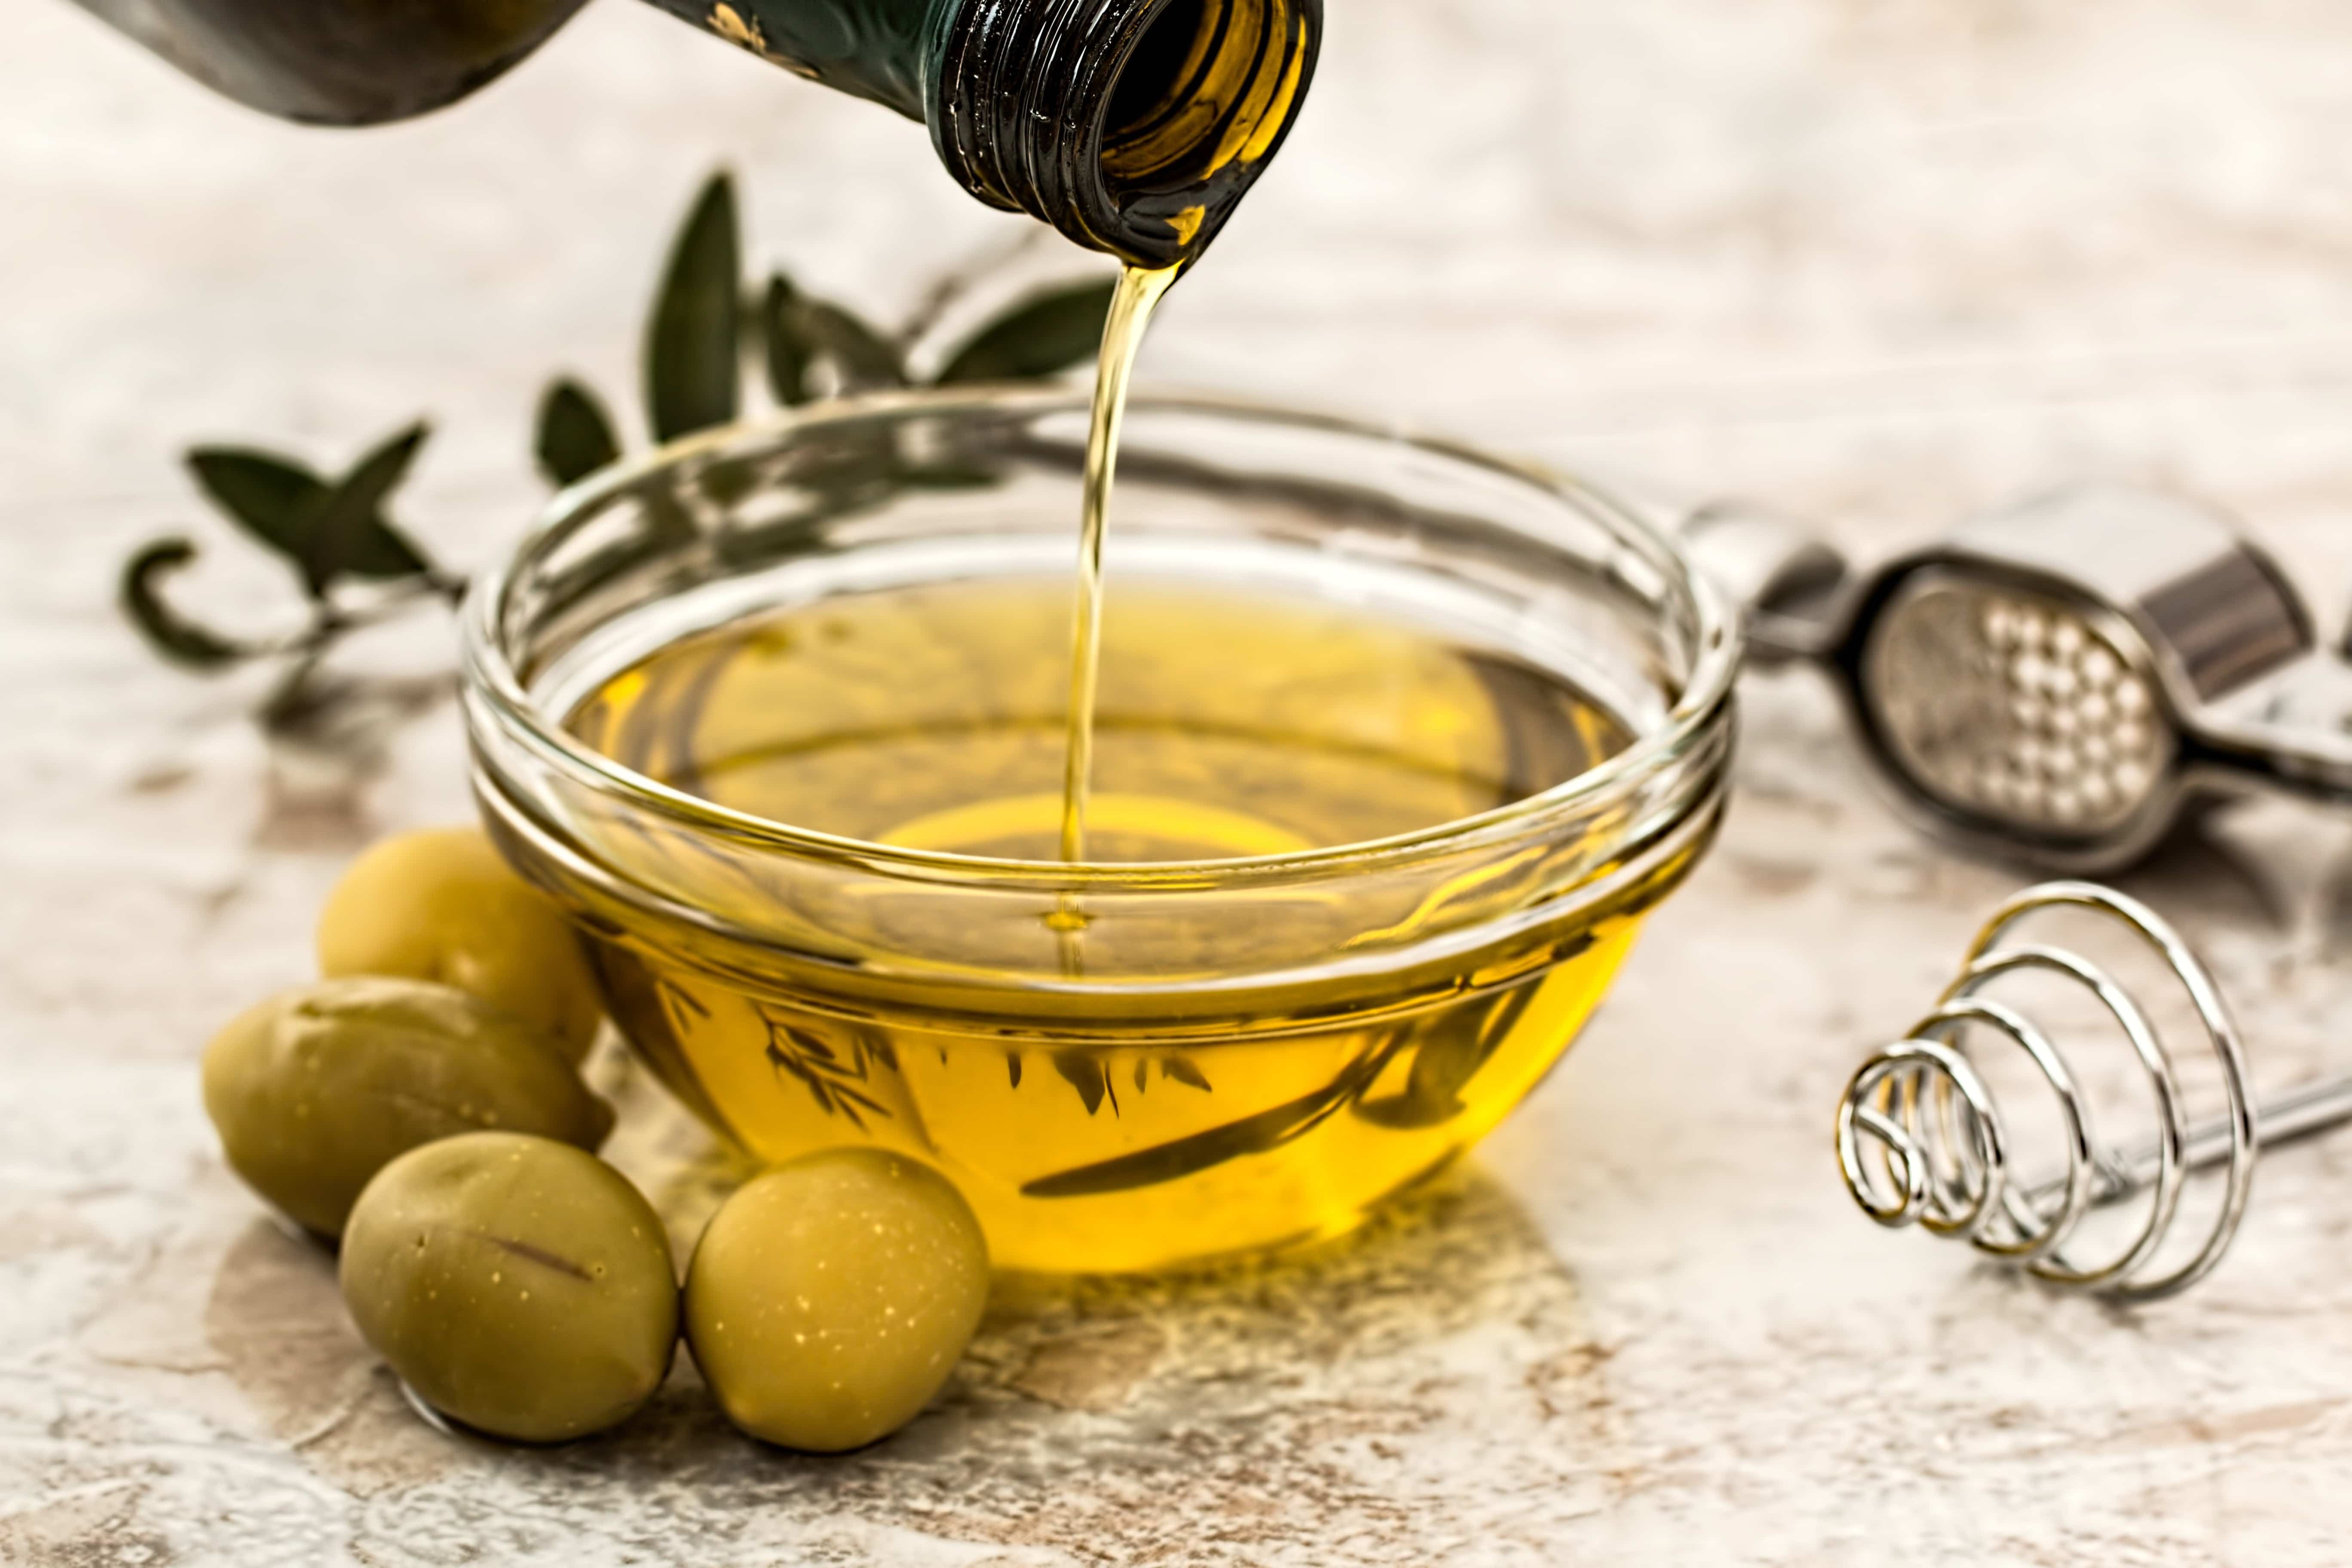 fles olijfolie in schaaltje en olijven ernaast